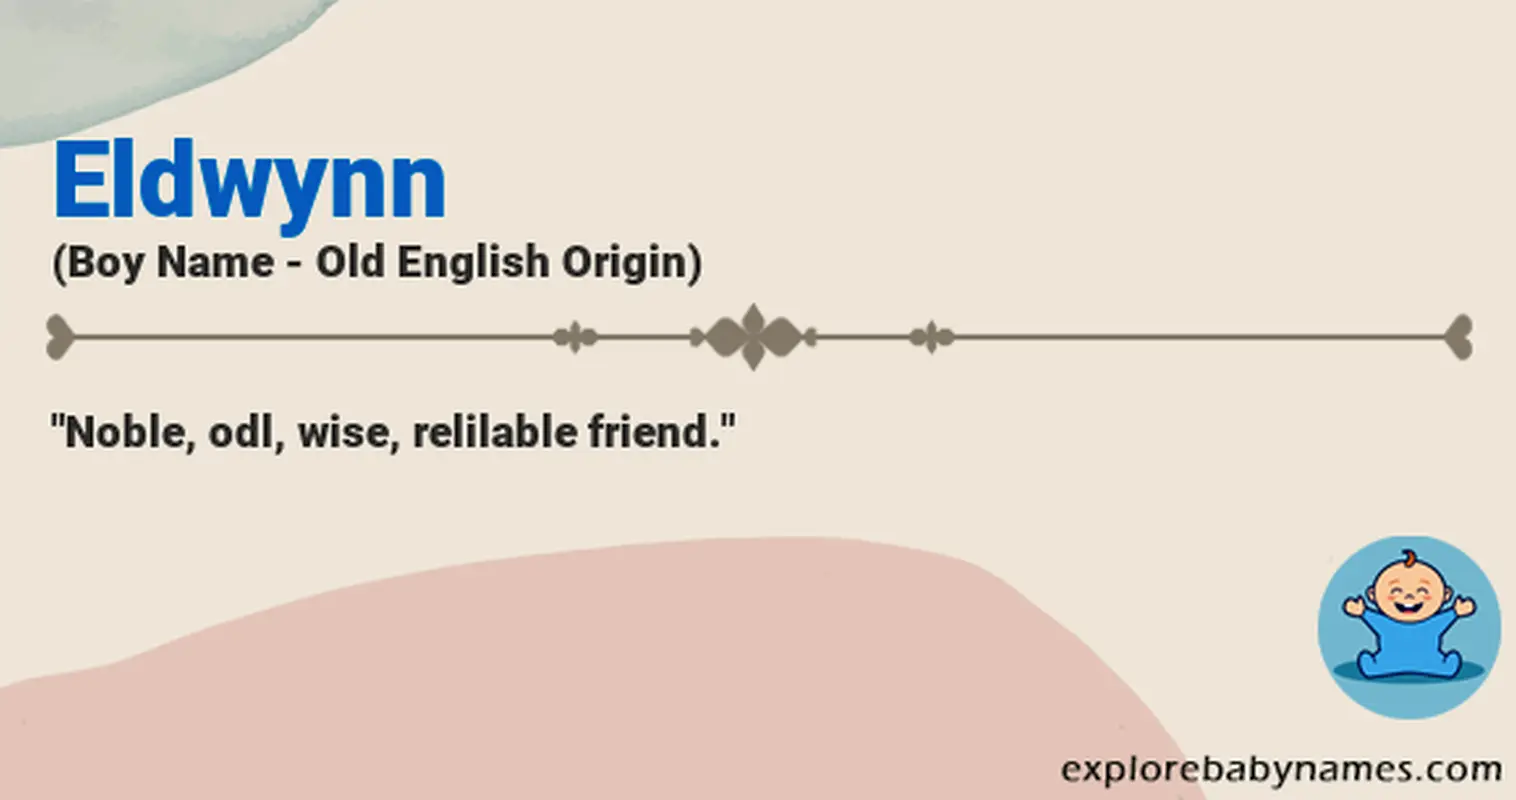 Meaning of Eldwynn